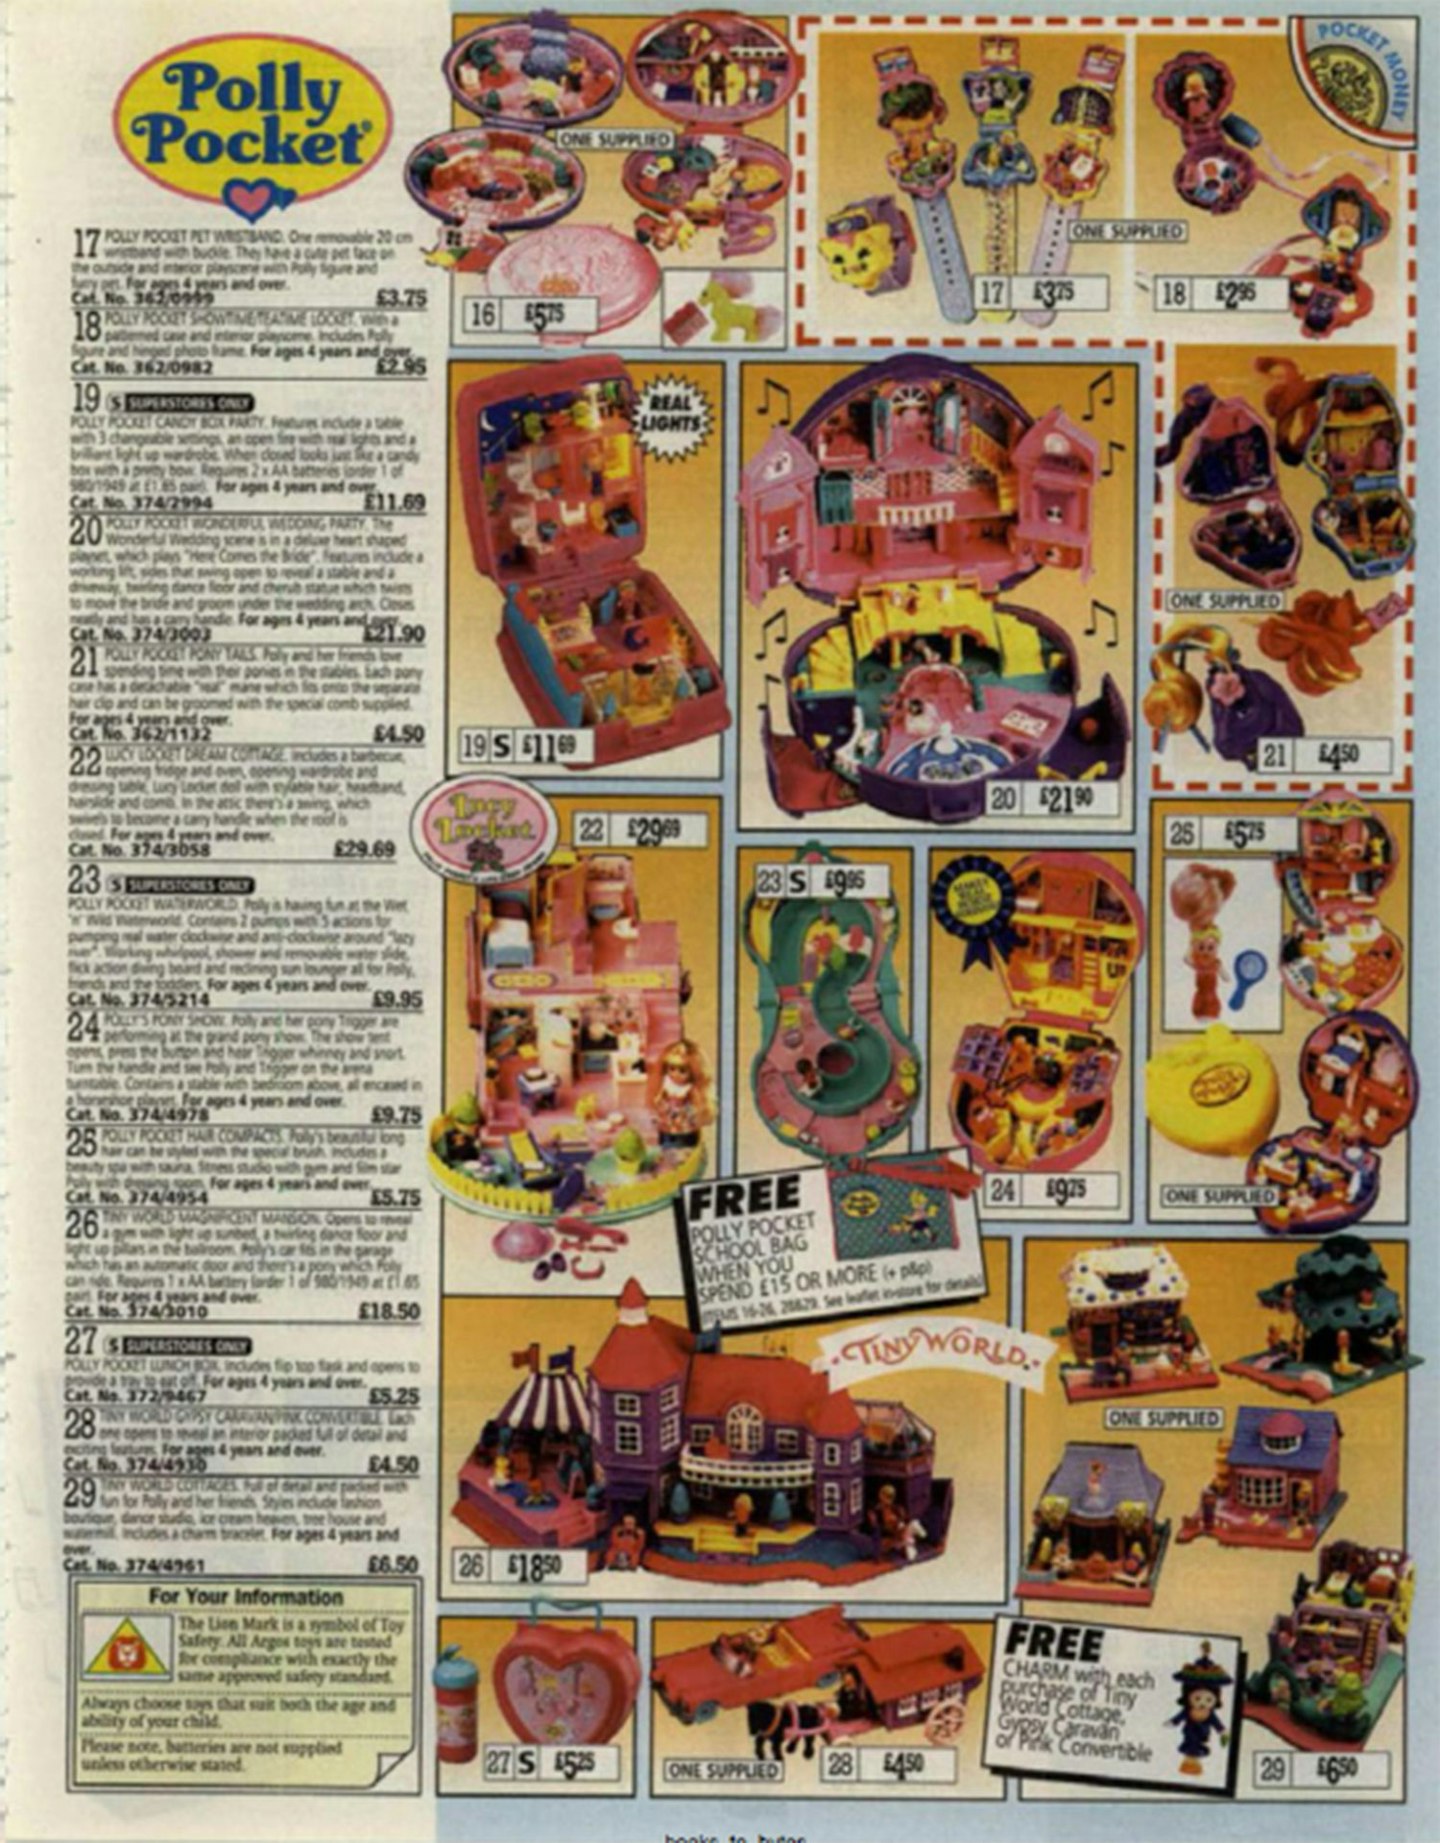 Argos 1999 Catalogue